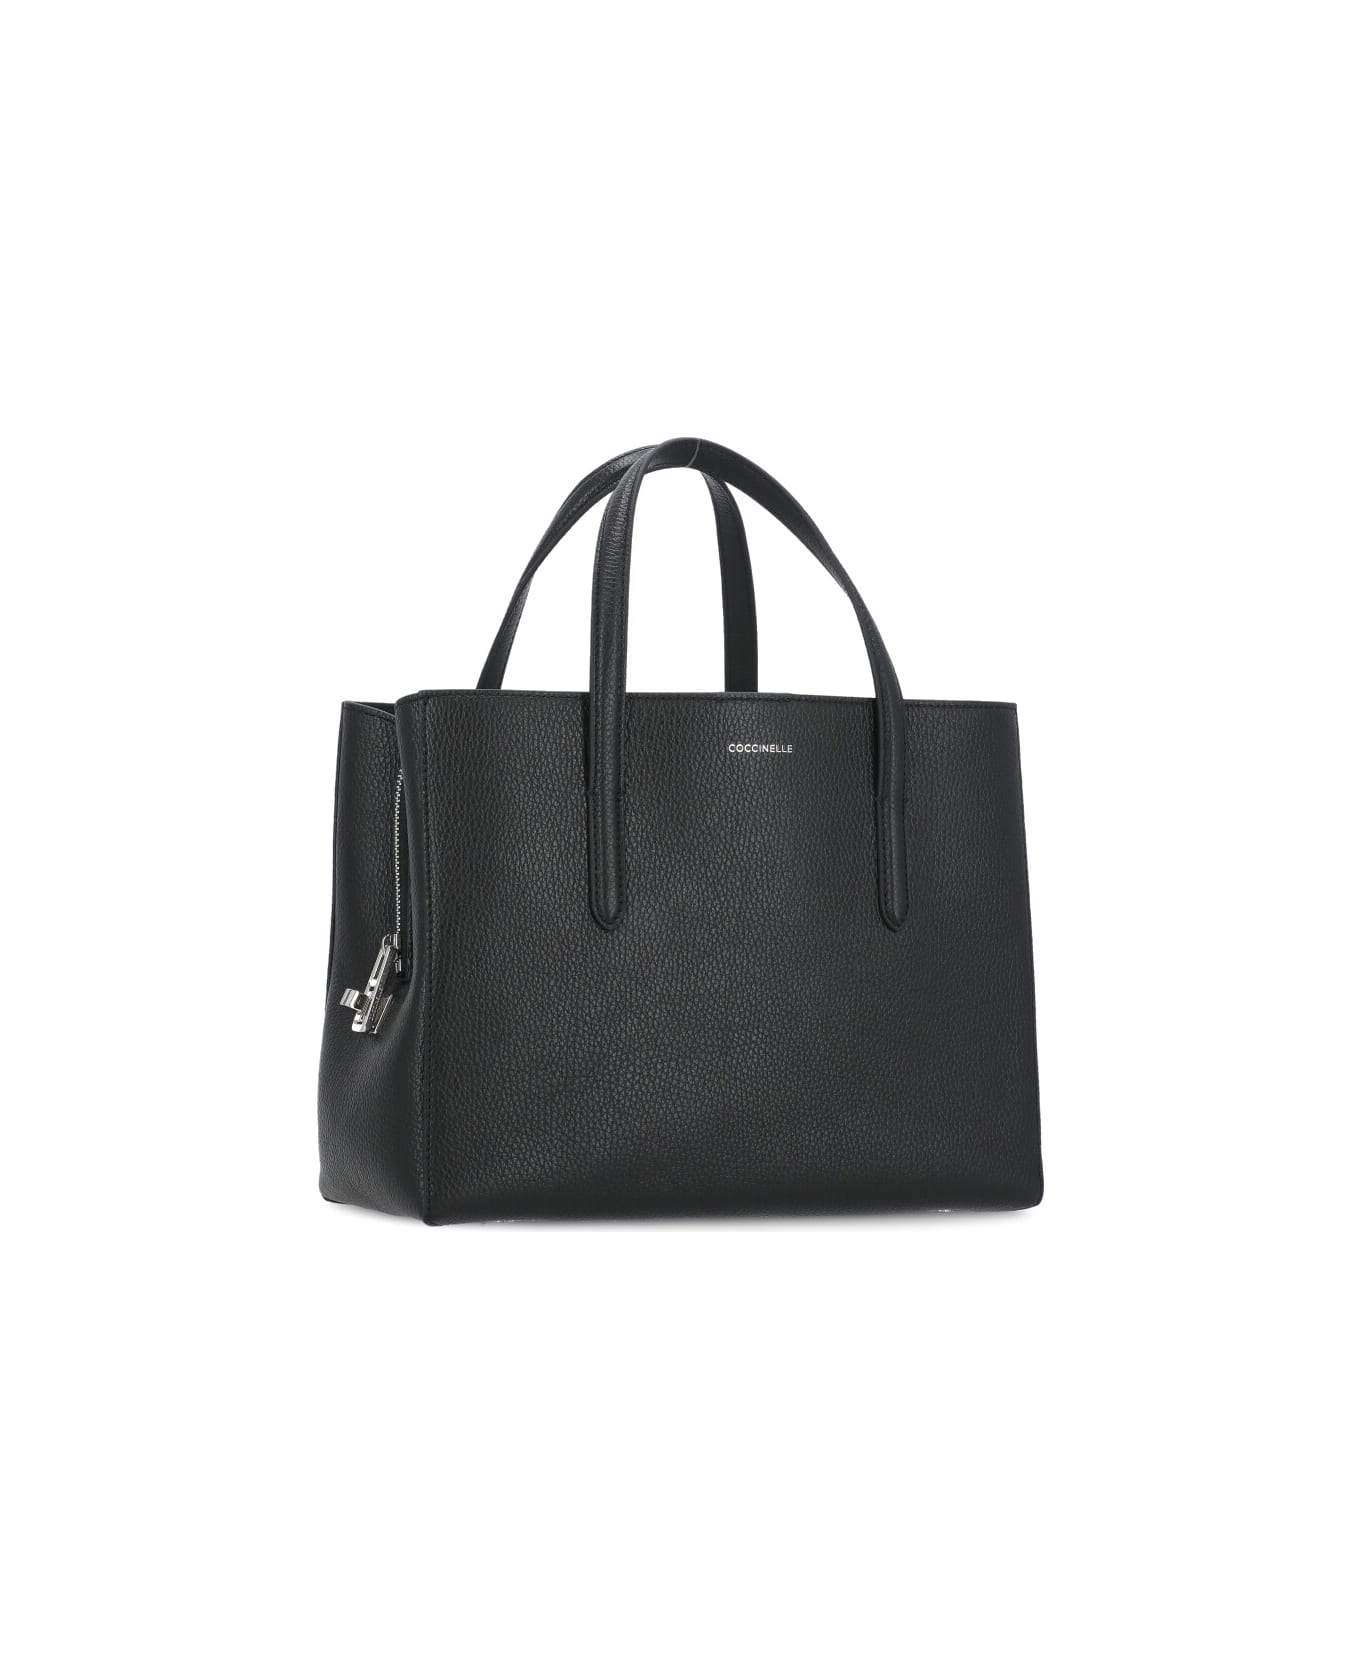 Coccinelle Swap Handbag - Black